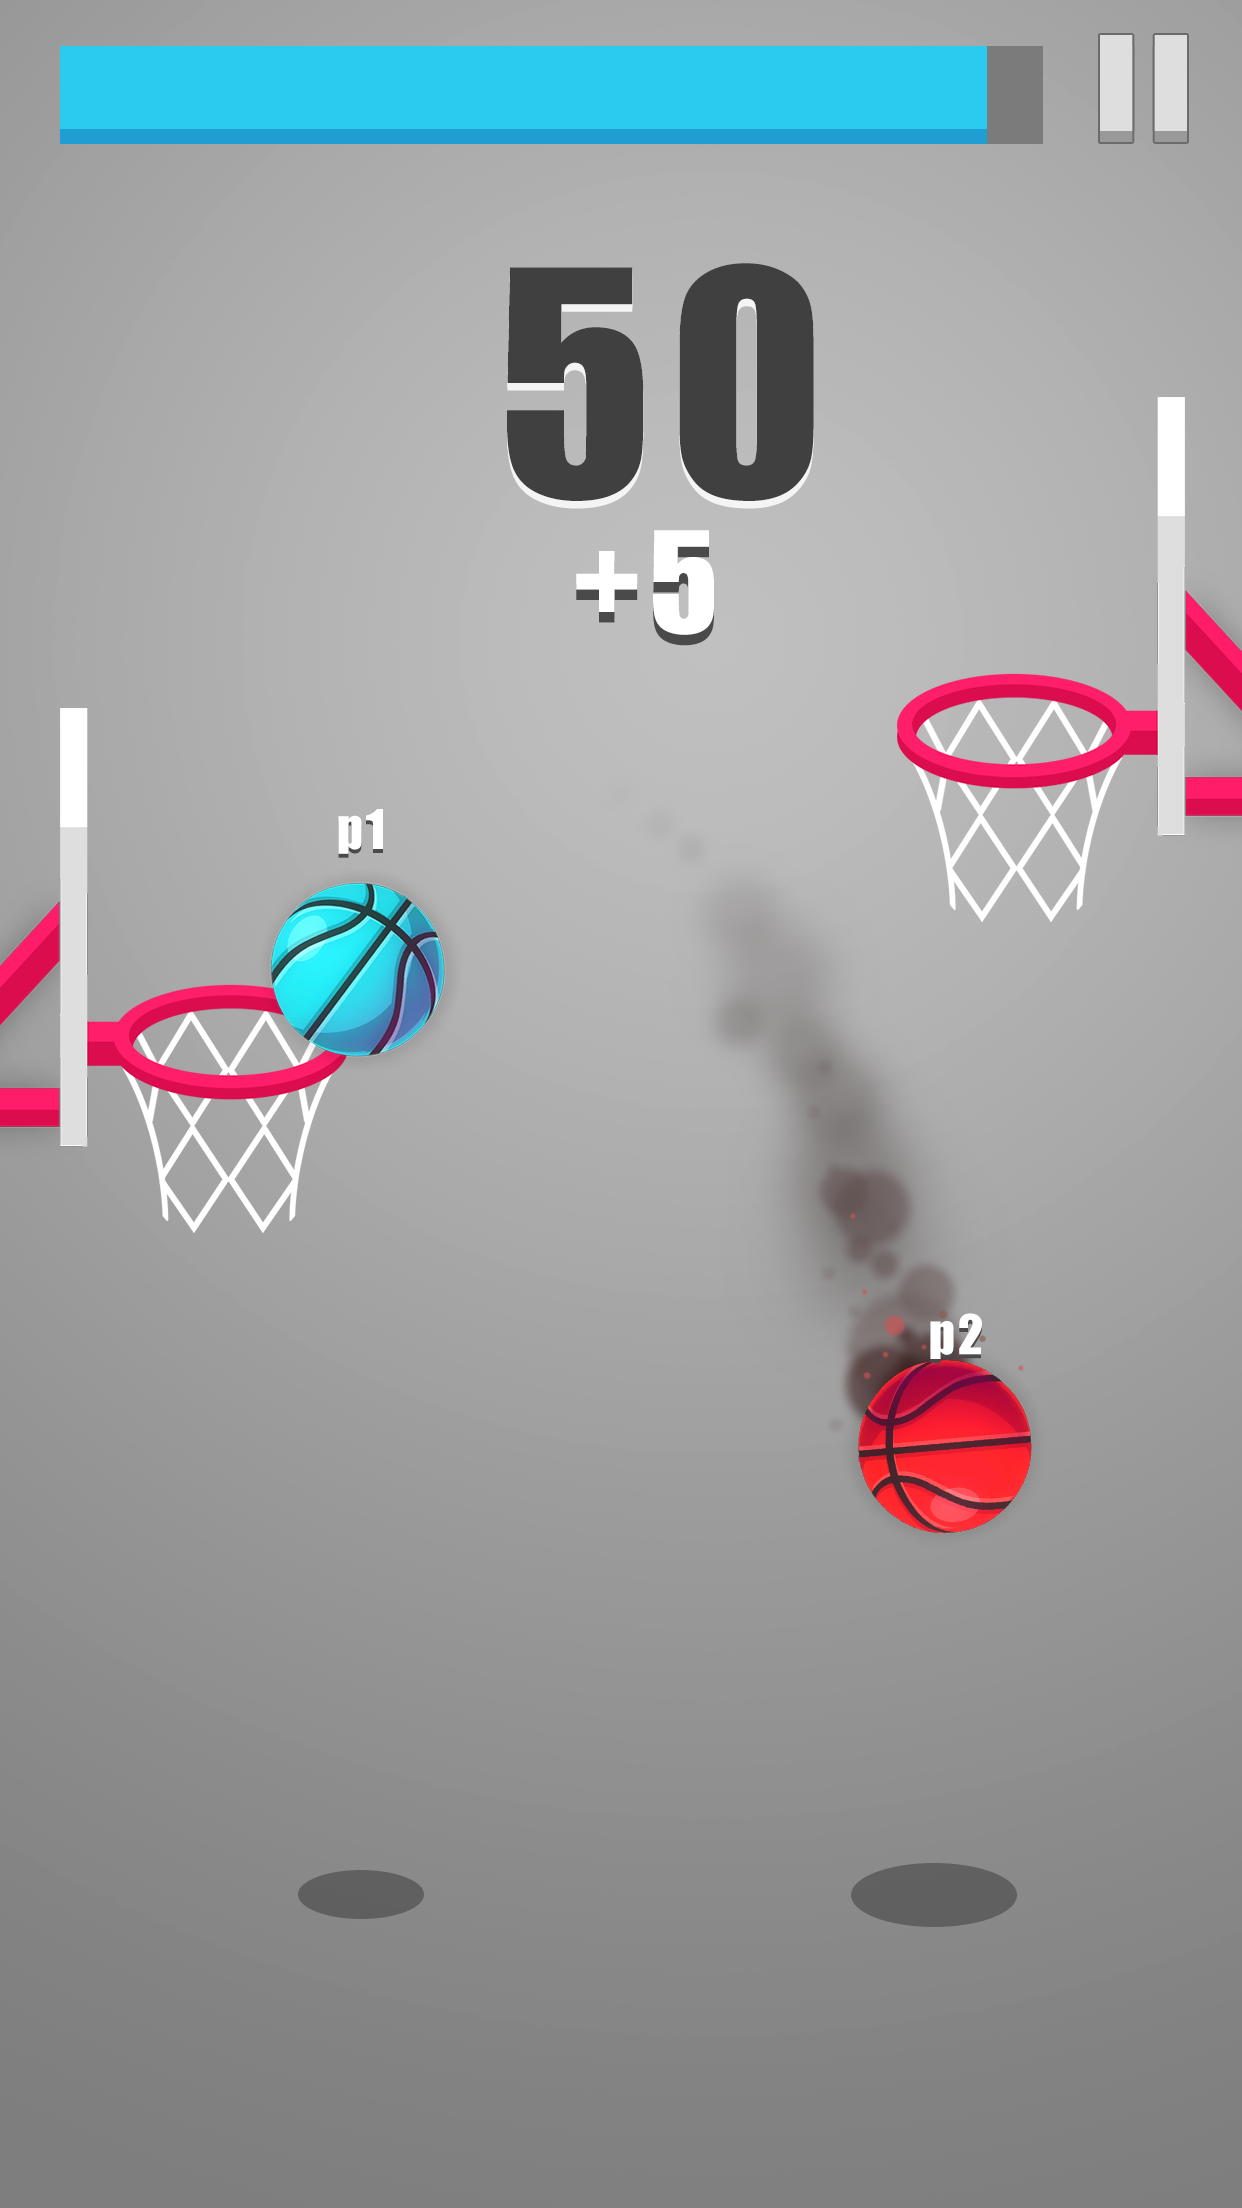  Dunk!Dunk Ball screenshot game